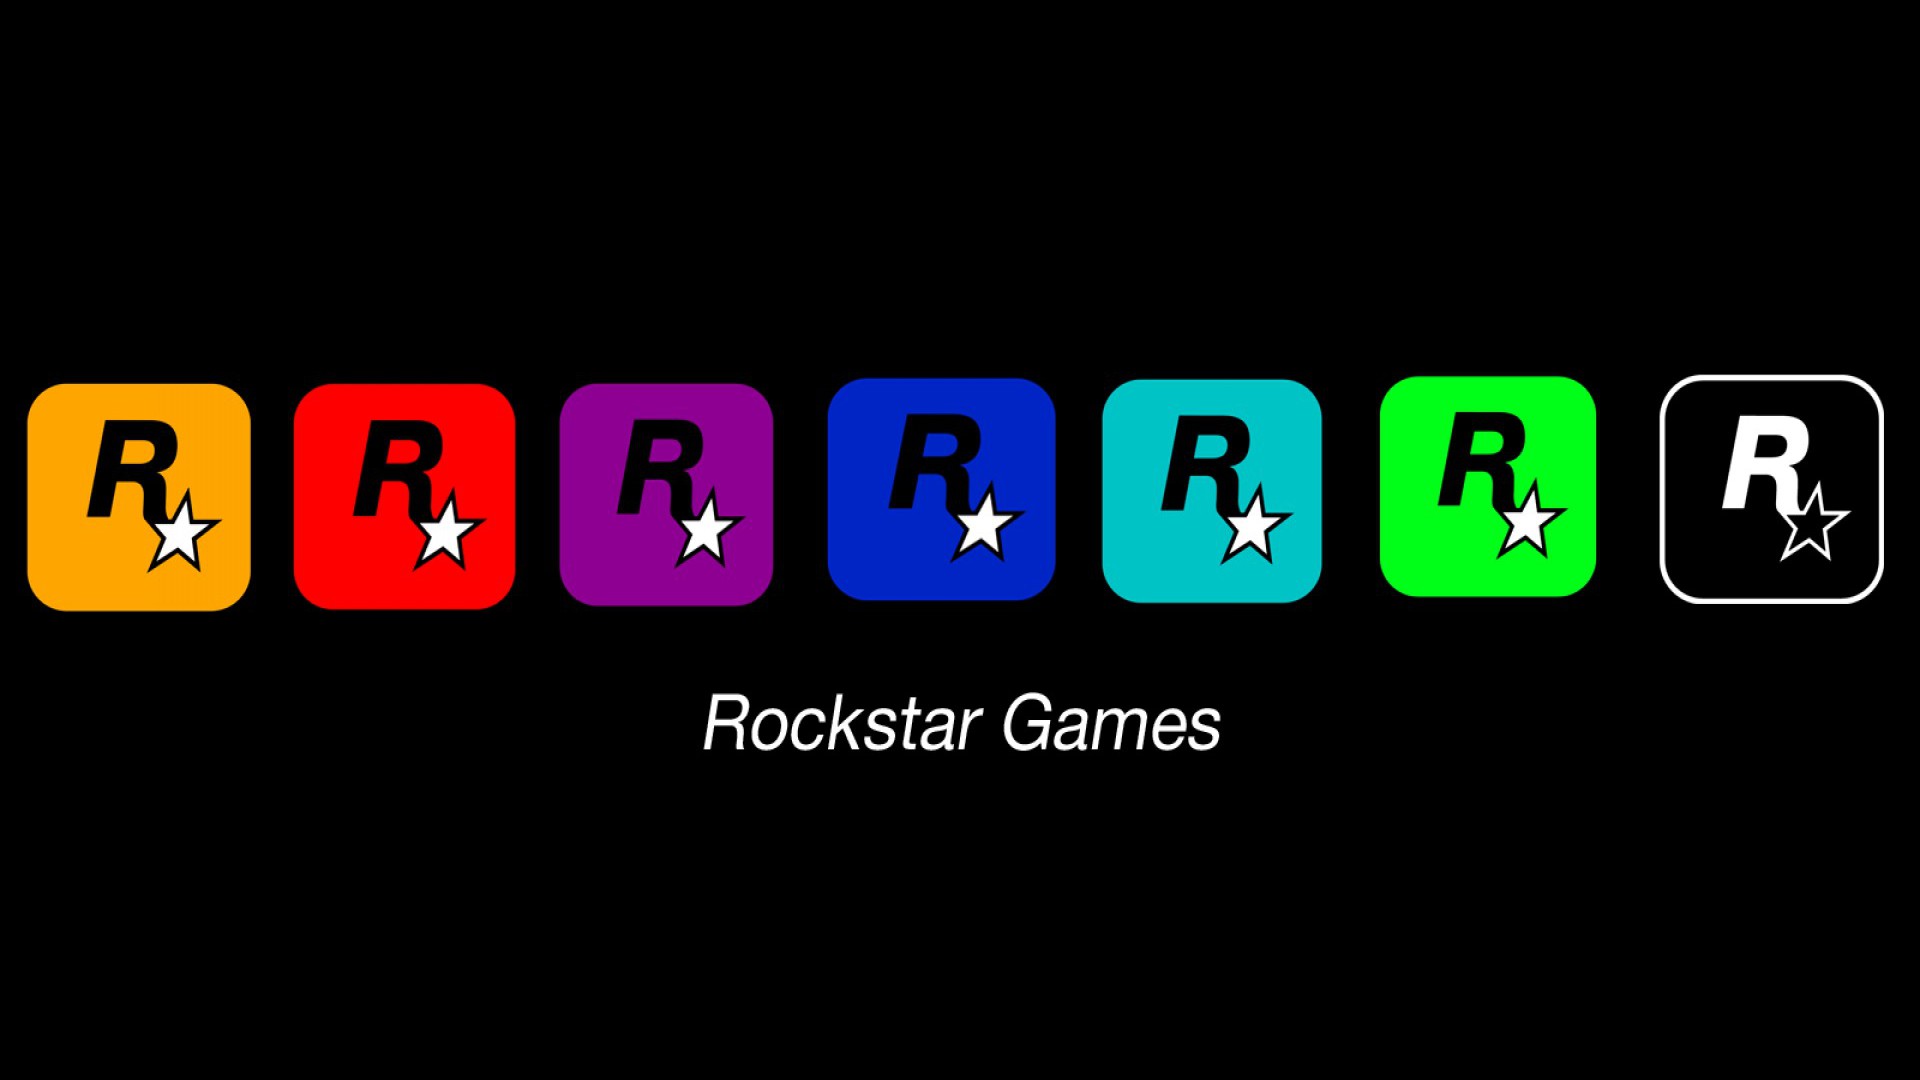 Rockstar games logos wallpaper 6537